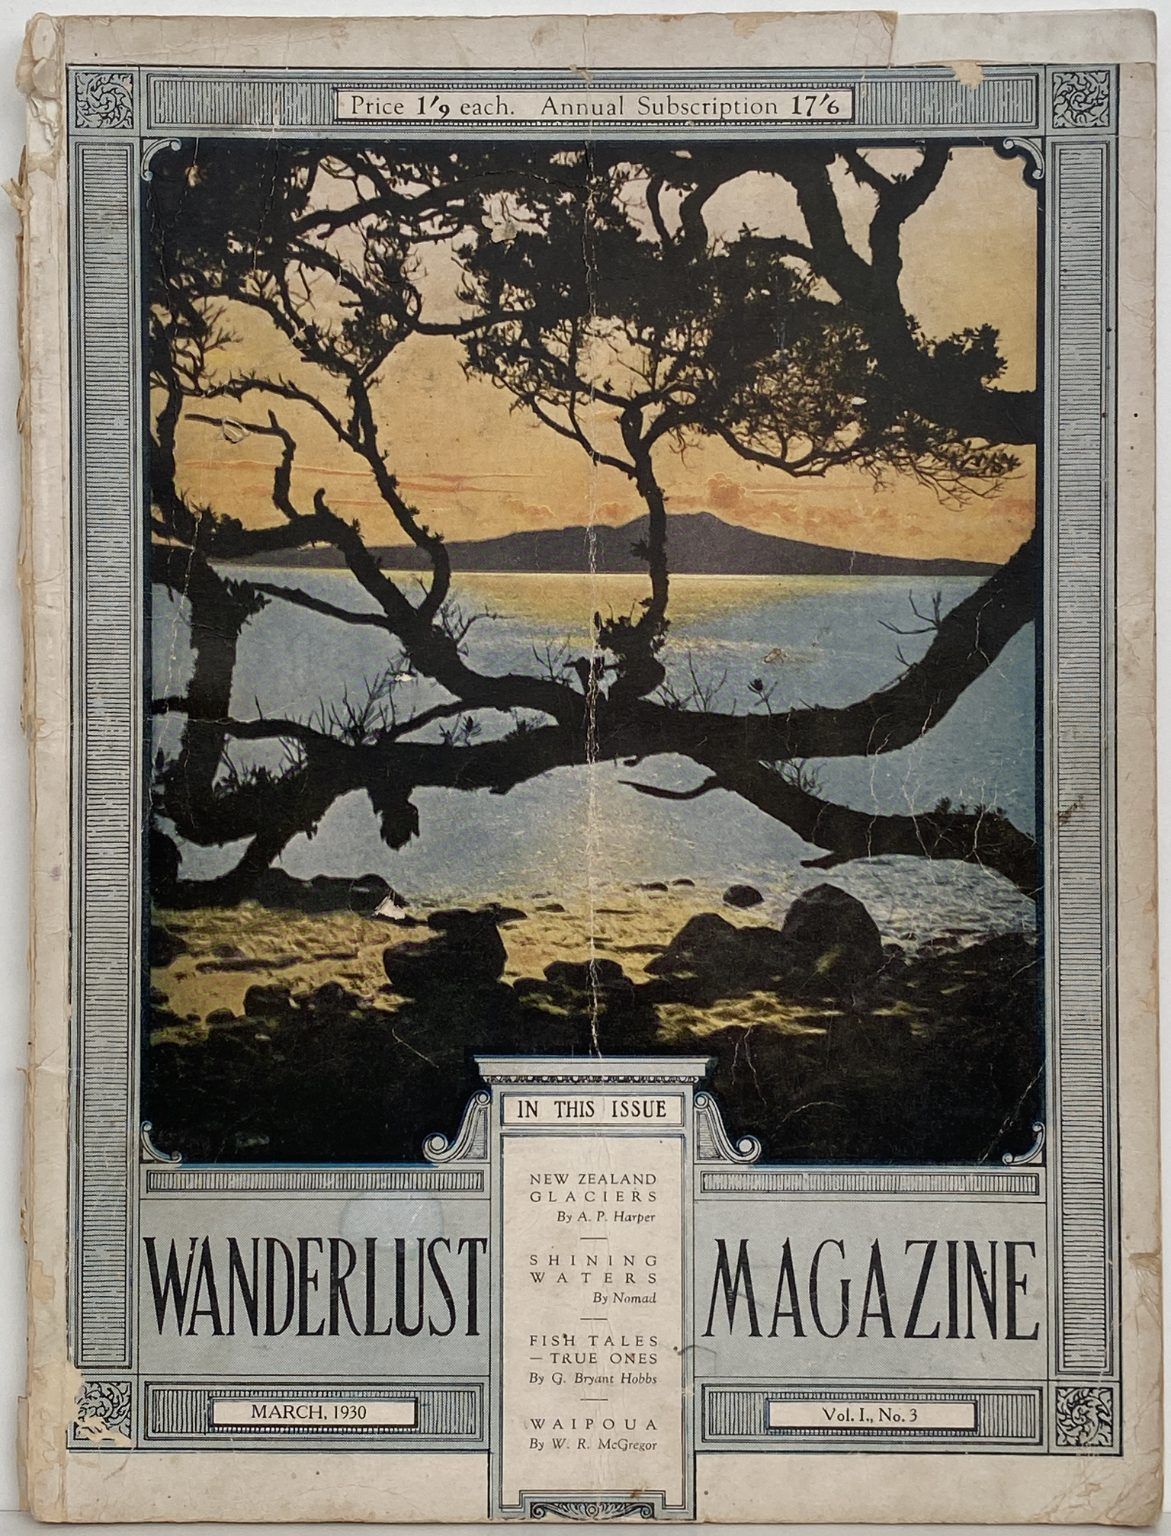 Wanderlust Magazine: Vol. 1, No 3. March 1930